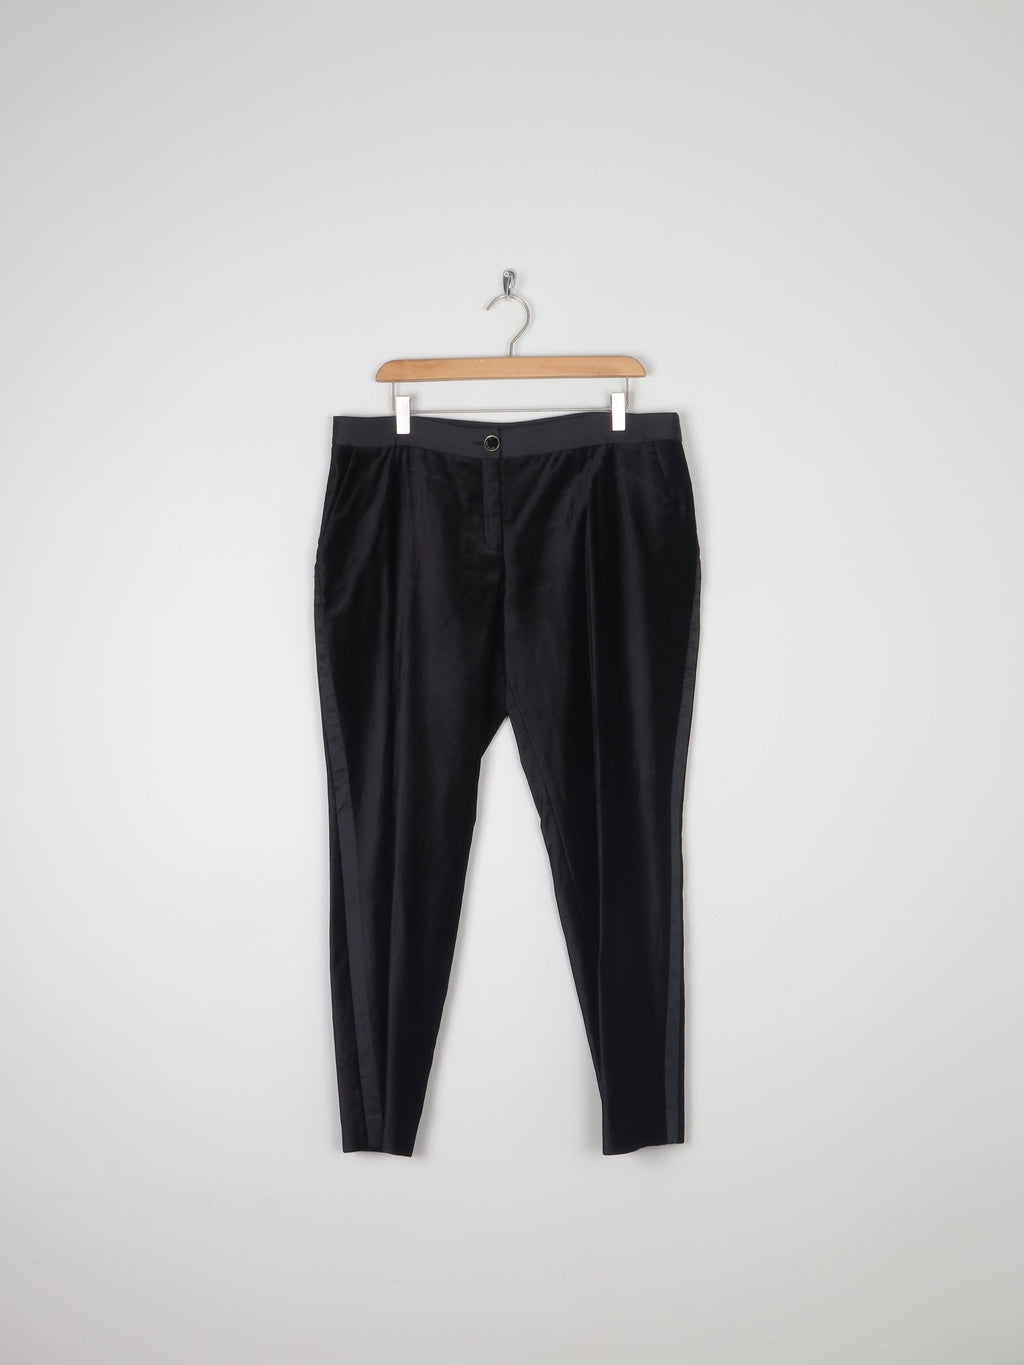 Women's Ted Baker Cropped Black Velvet Pants 14 - The Harlequin